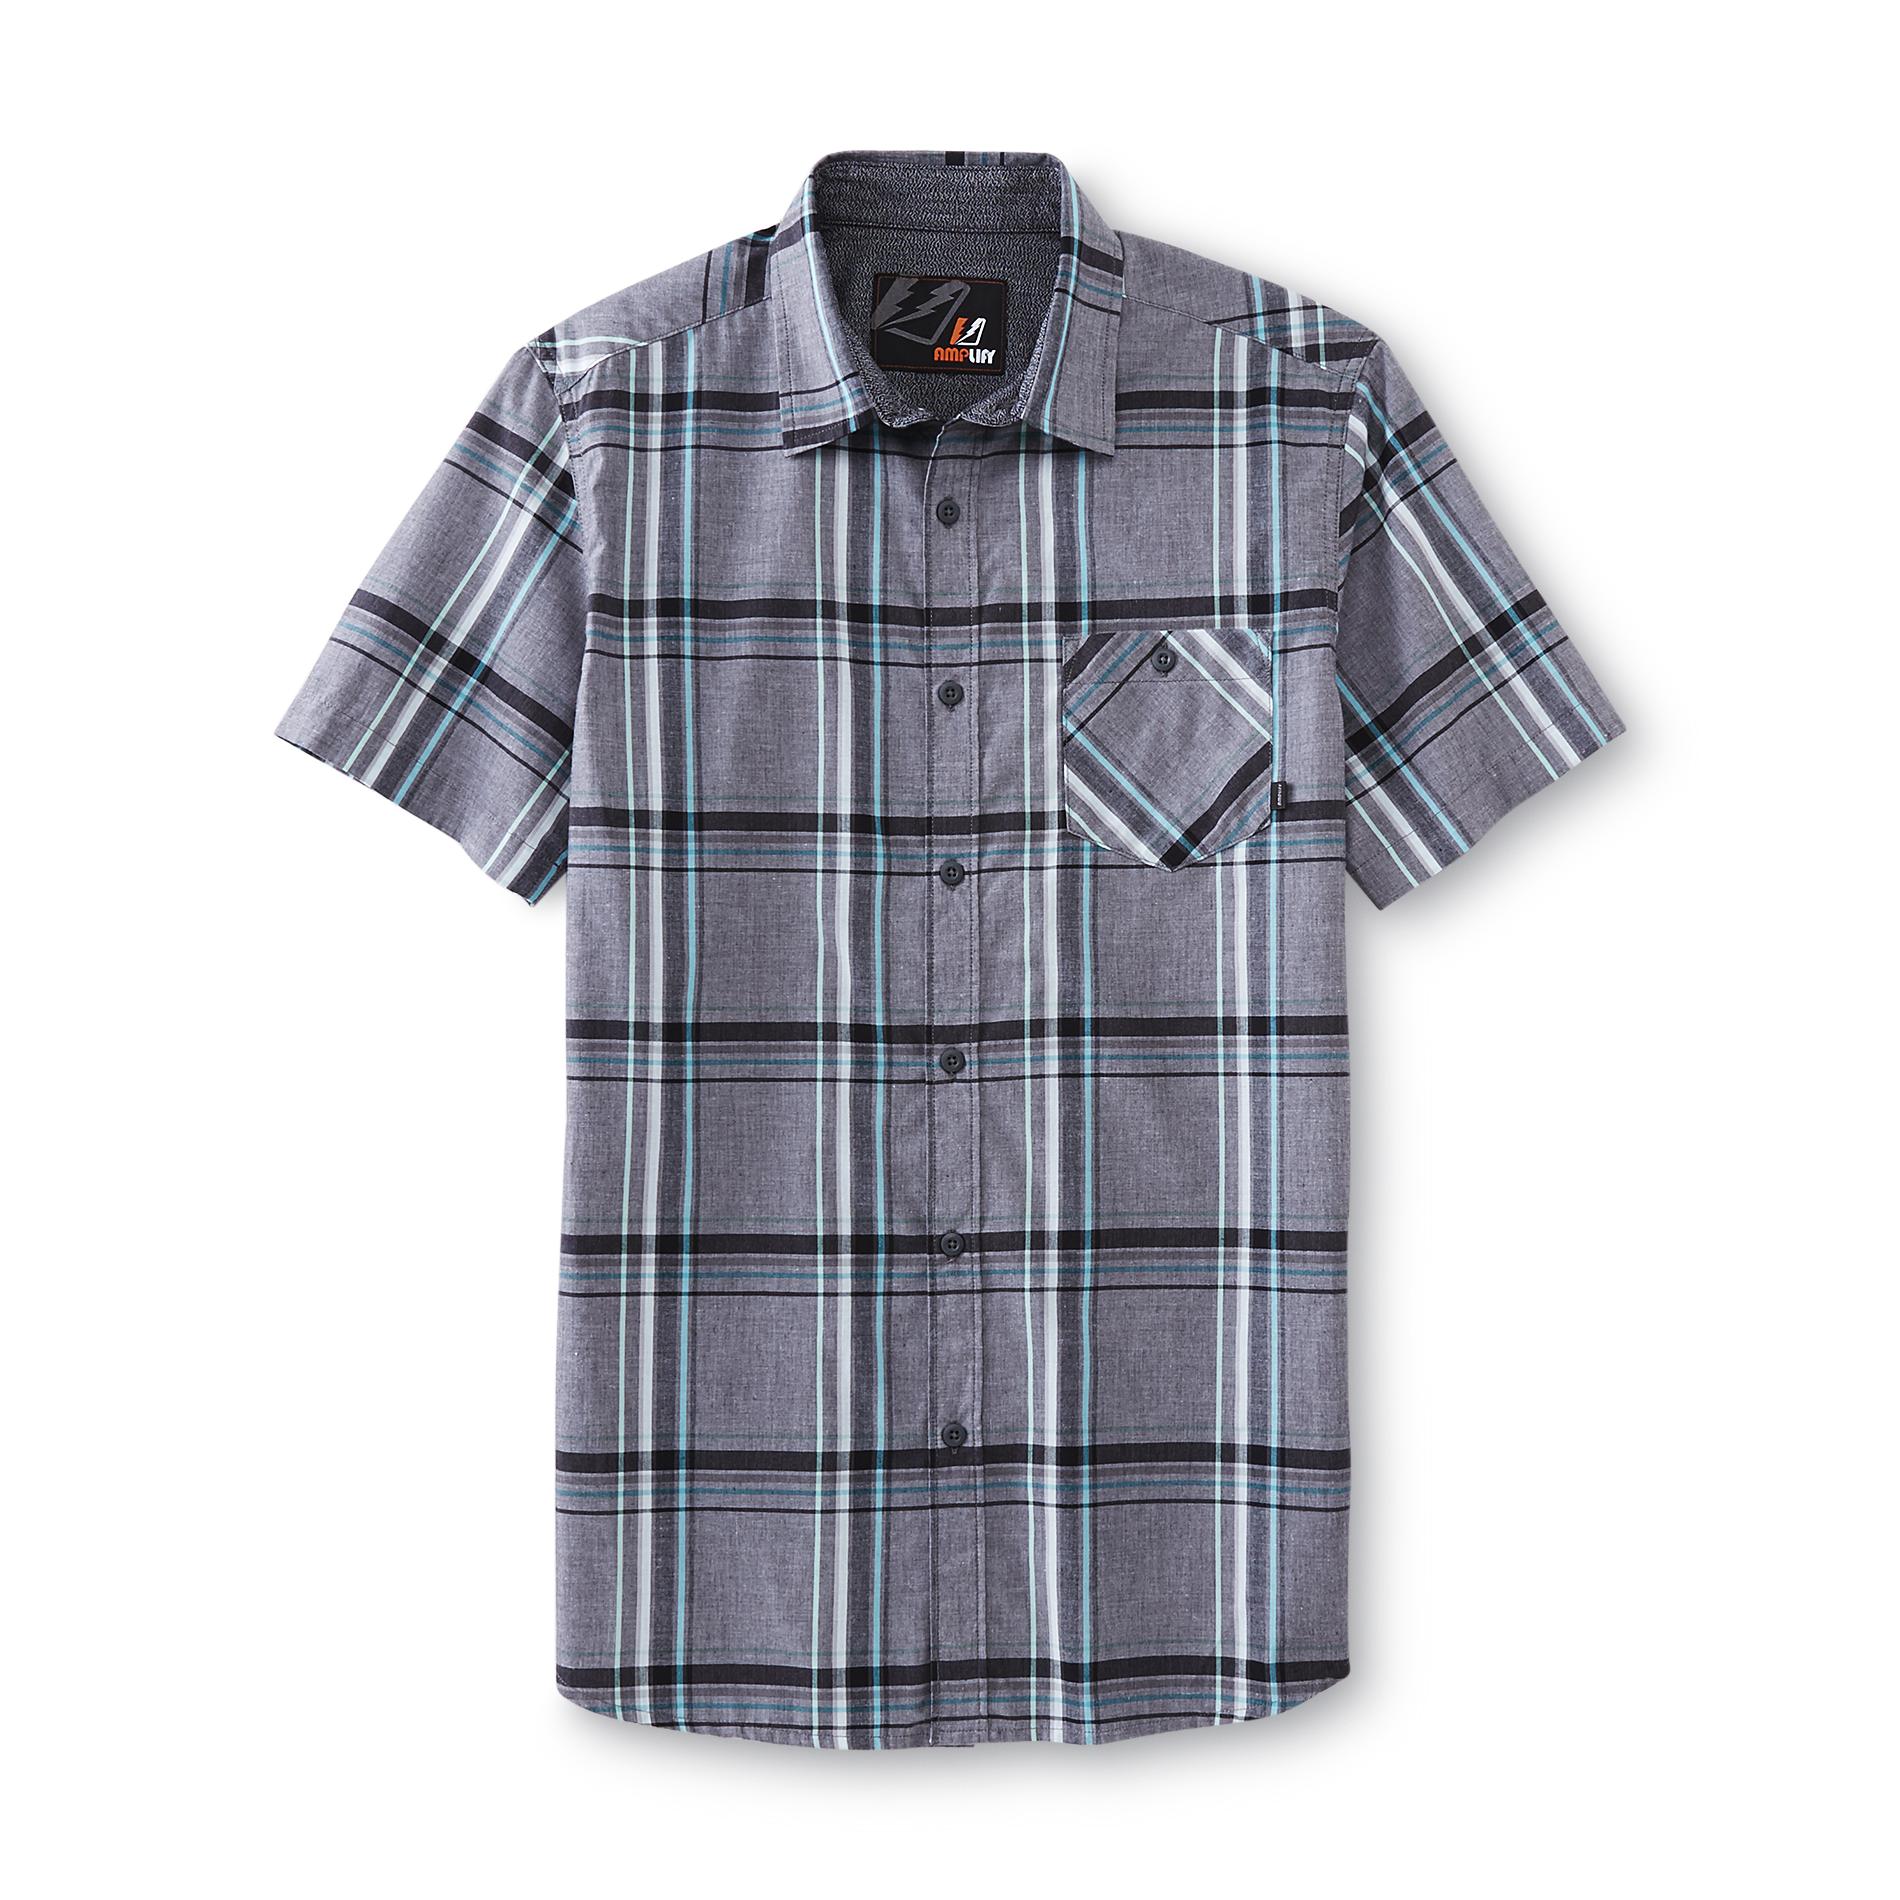 Young Men's Button-Front Shirt - Plaid